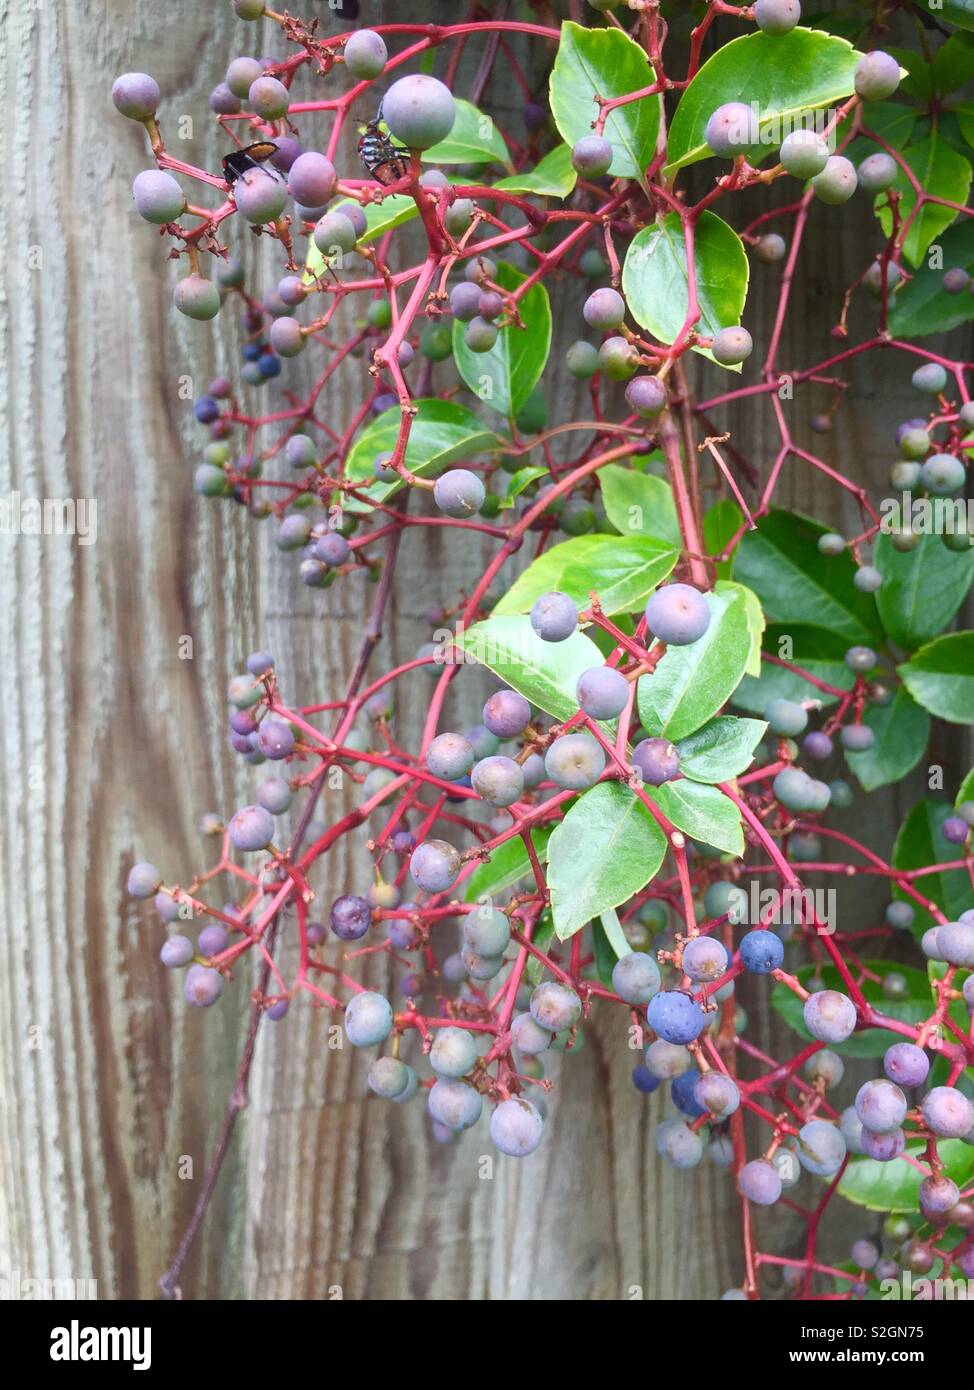 Vigne vierge, Parthenocissus quinquefolia, une plante grimpante, avec de petits fruits bleu-noir en automne. Vitaceae. Plantes ornementales, pas comestibles. London UK Banque D'Images